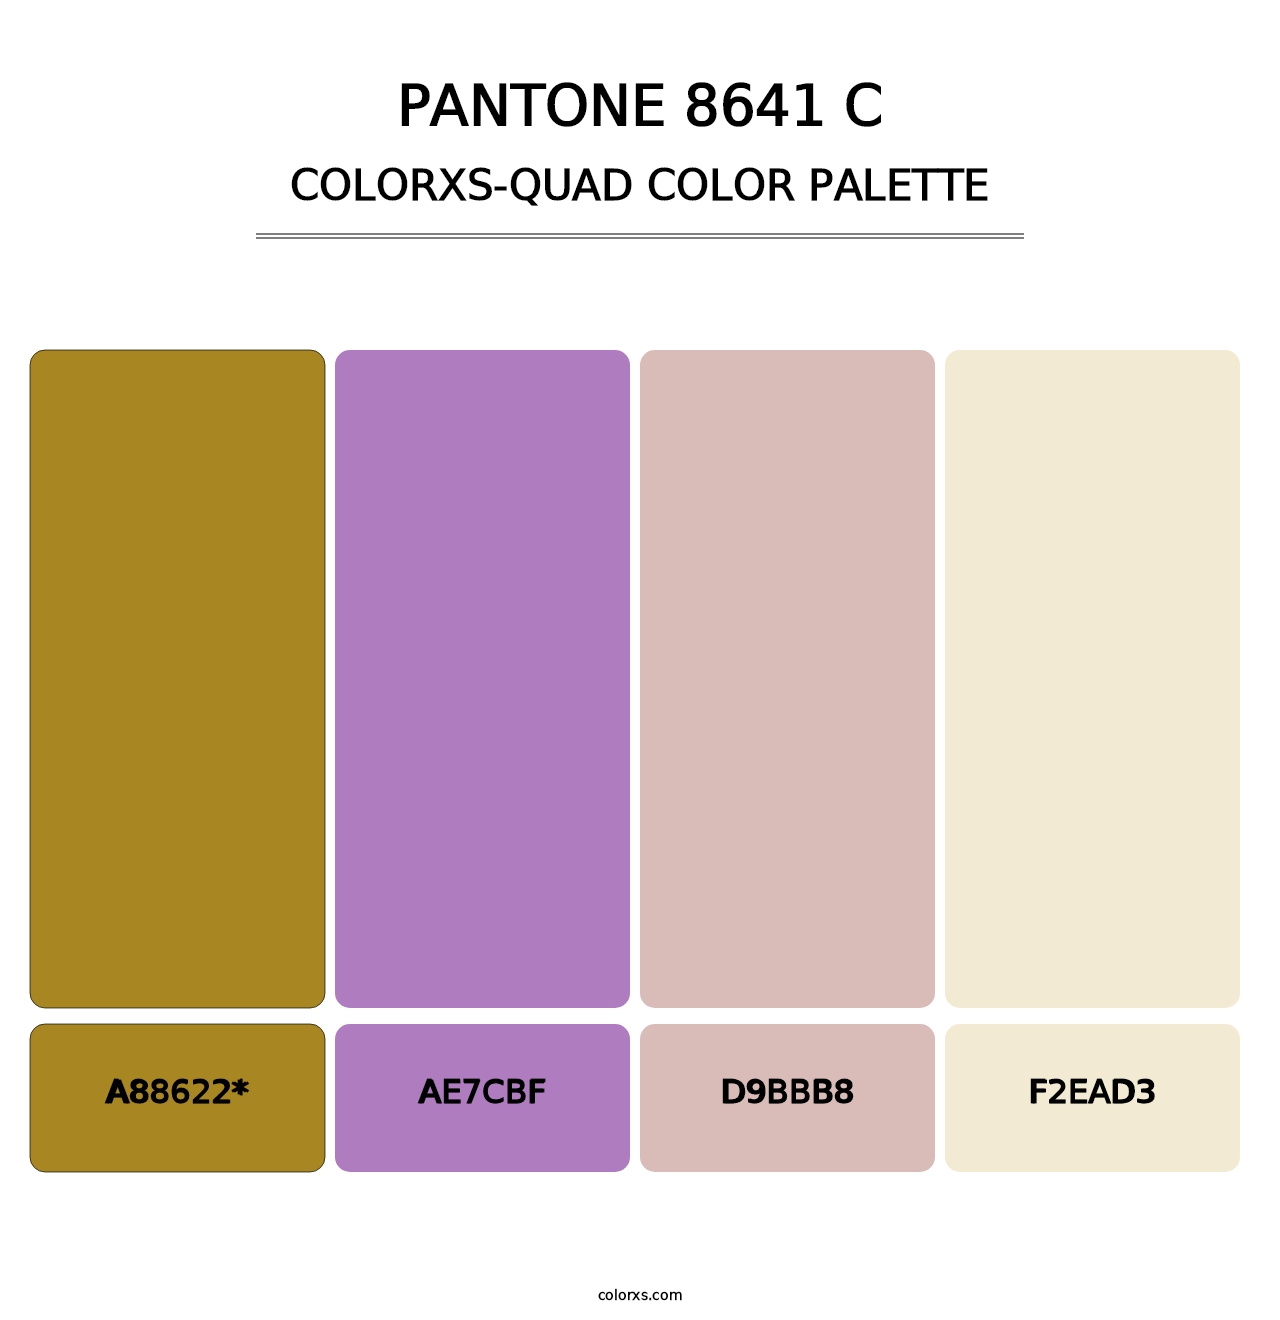 PANTONE 8641 C - Colorxs Quad Palette